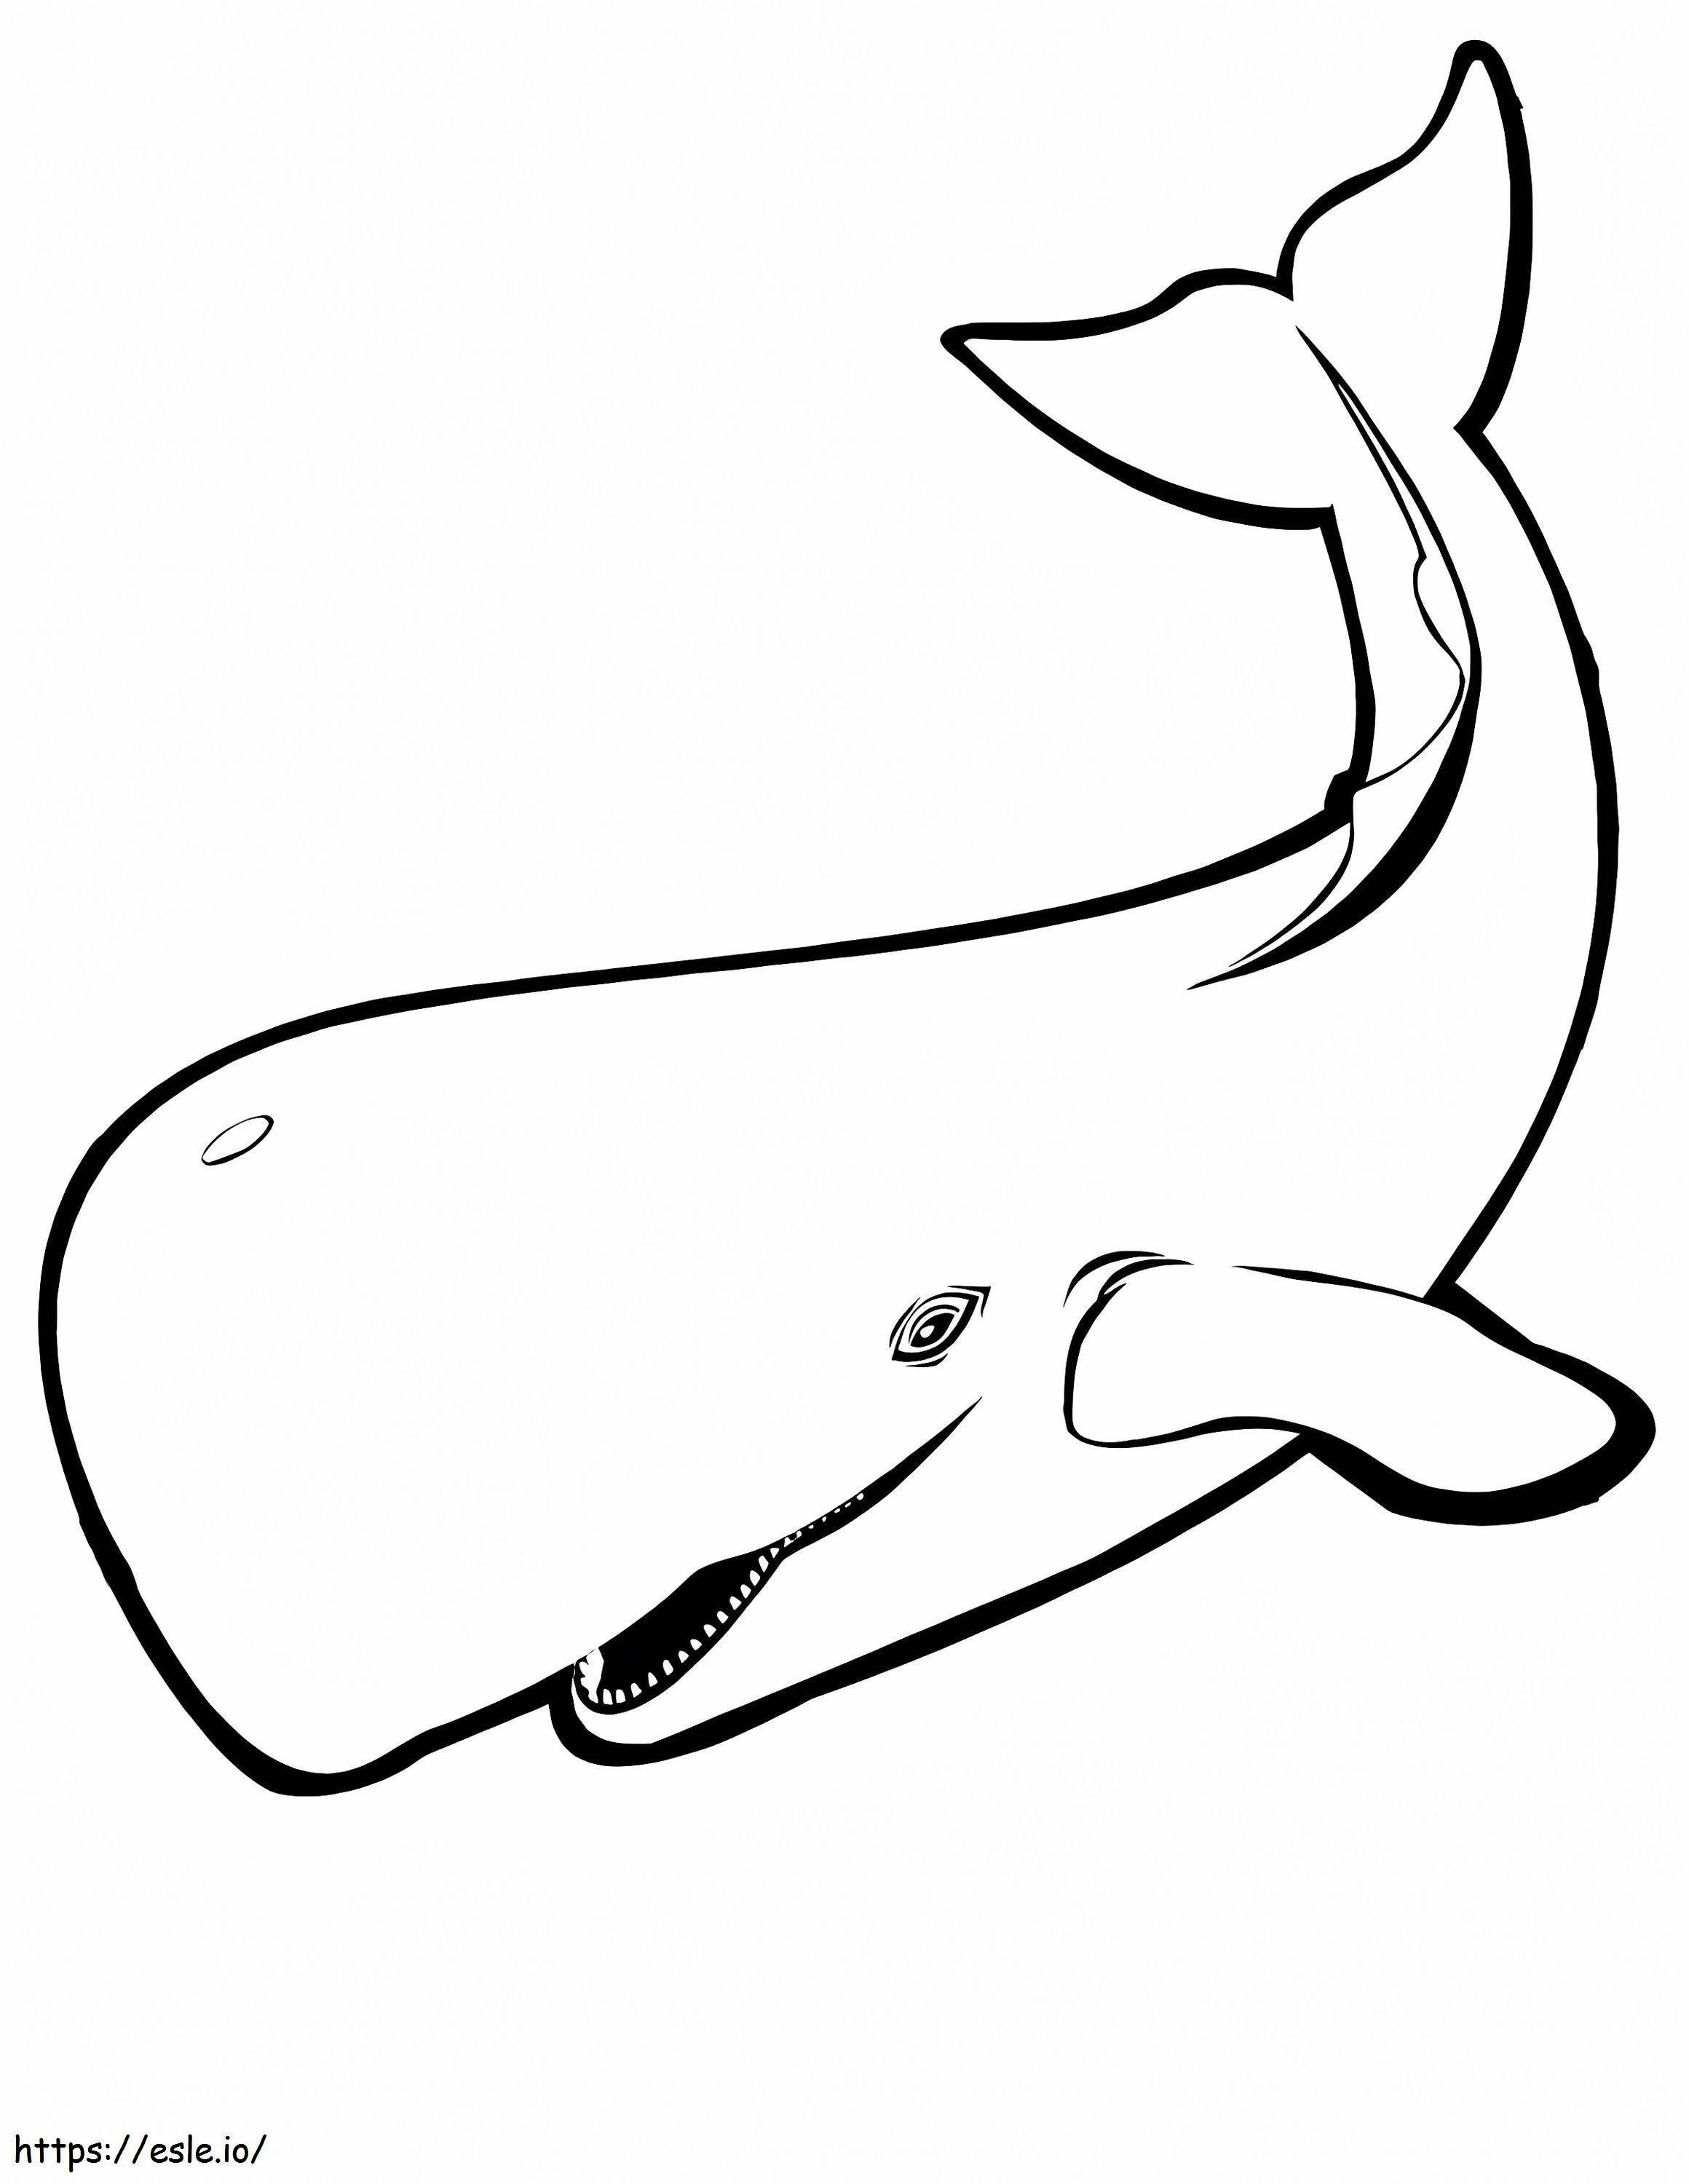 1541747932 Whale Coloringkids Org de colorat